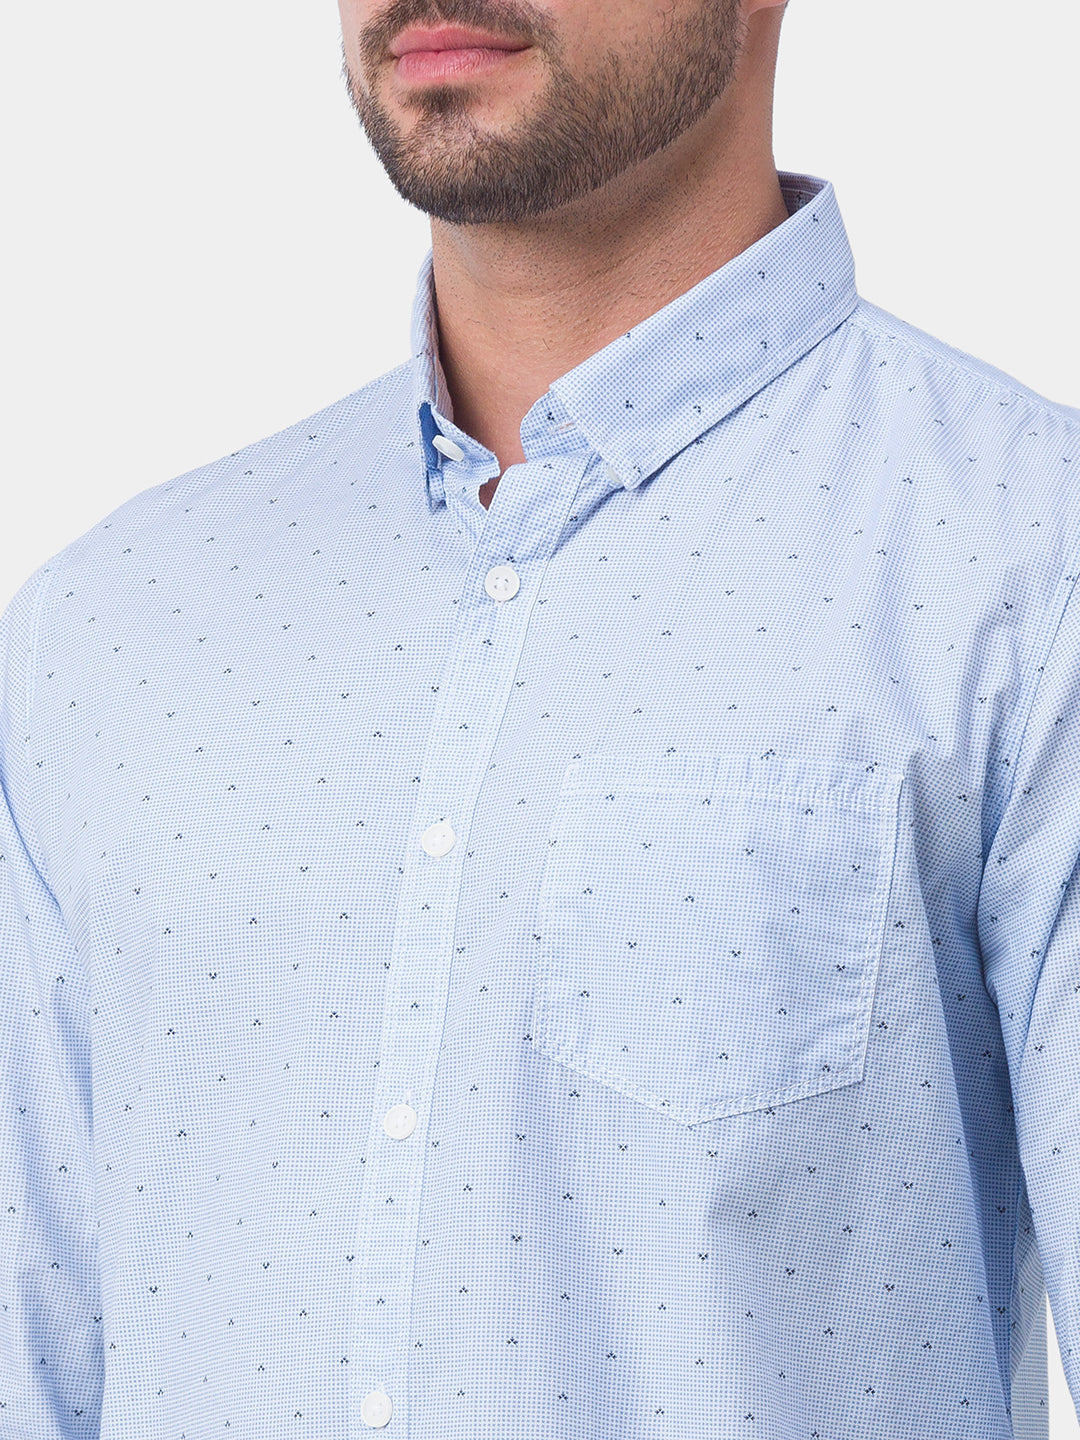 Spykar Sky Blue Cotton Full Sleeve Printed Shirt For Men